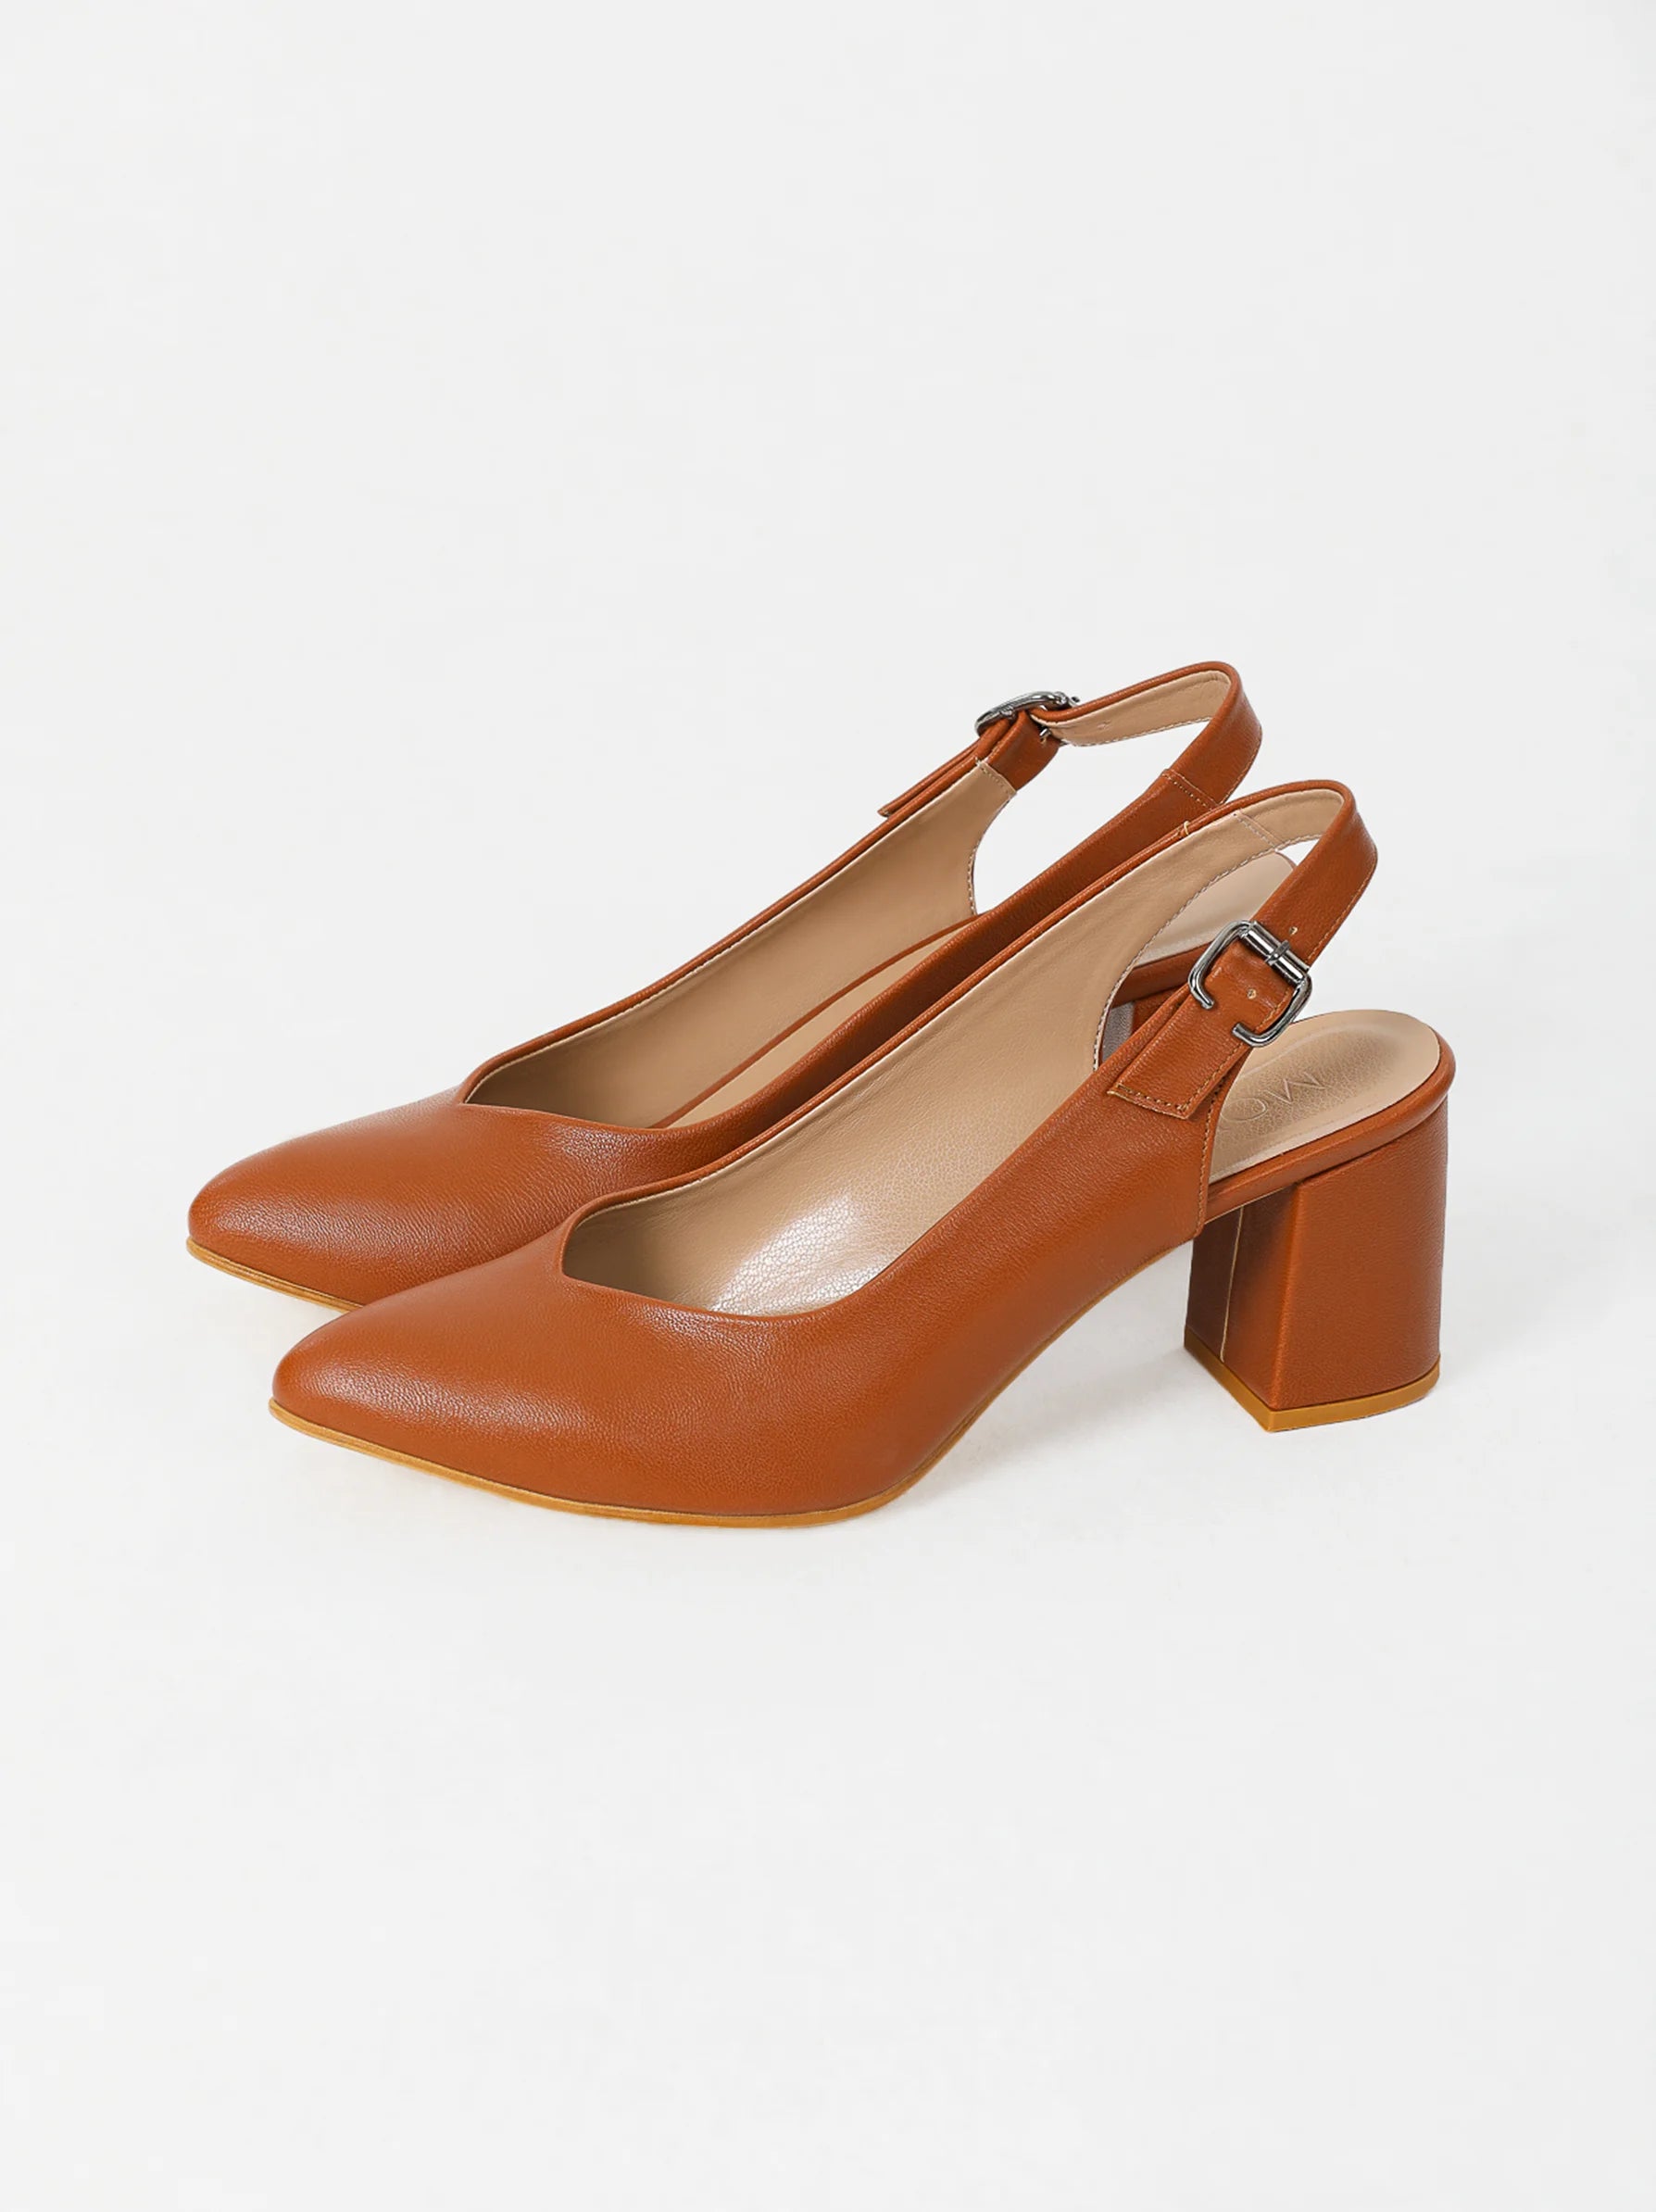 Buy Women Brown Casual Heels Online - 756625 | Allen Solly